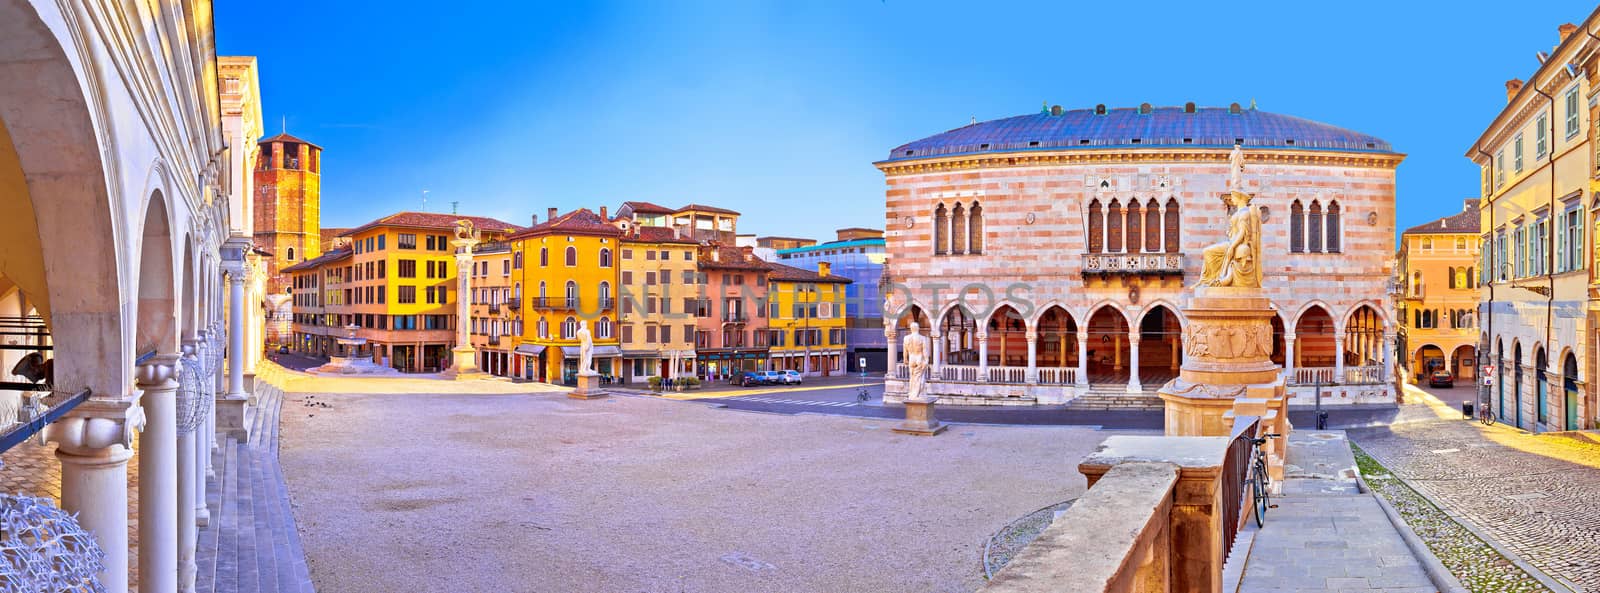 Piazza della Liberta square in Udine landmarks view, Friuli-Venezia Giulia region of Italy
